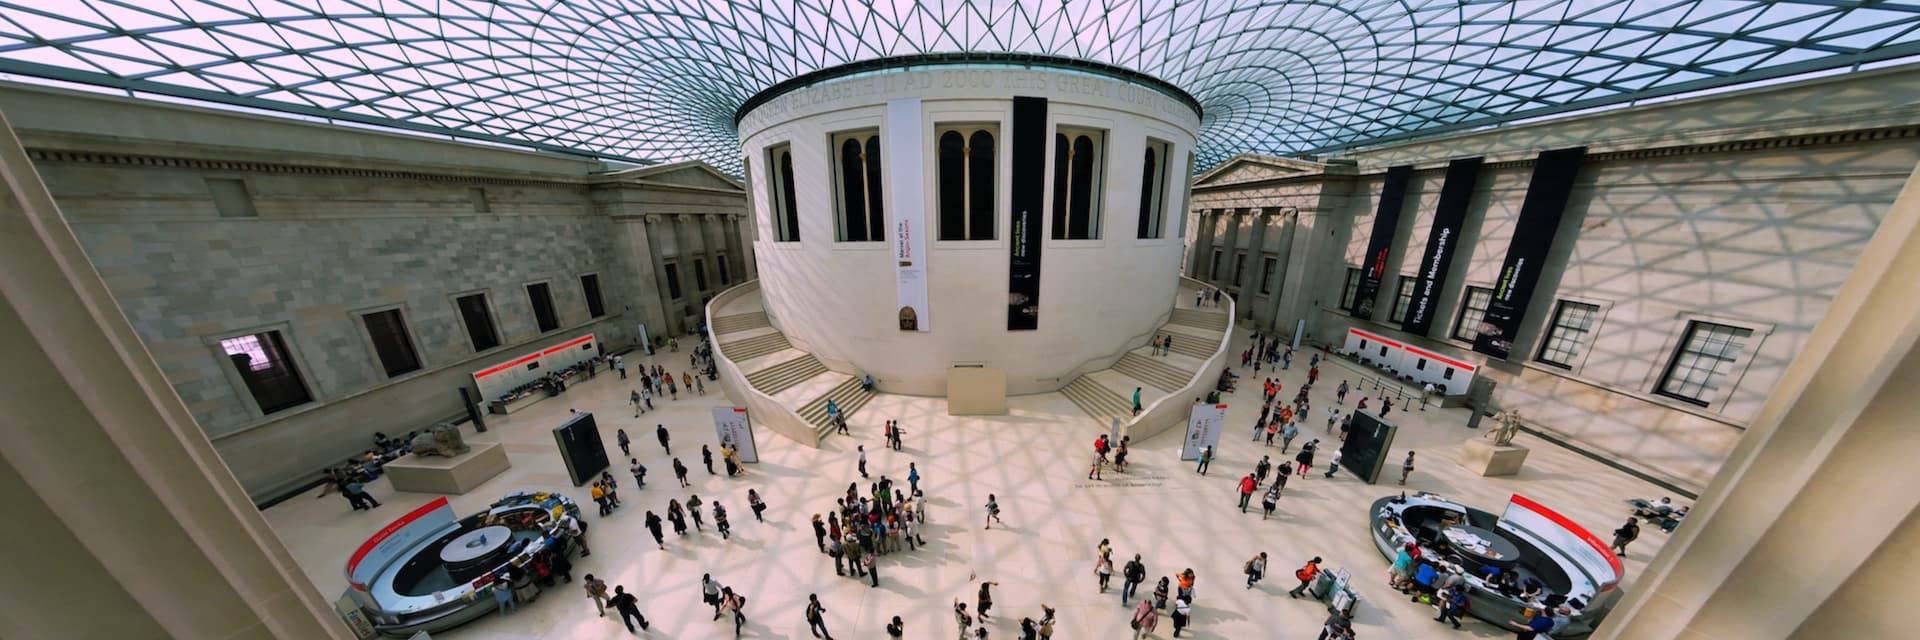 Visita guiada al Museo Británico de Londres